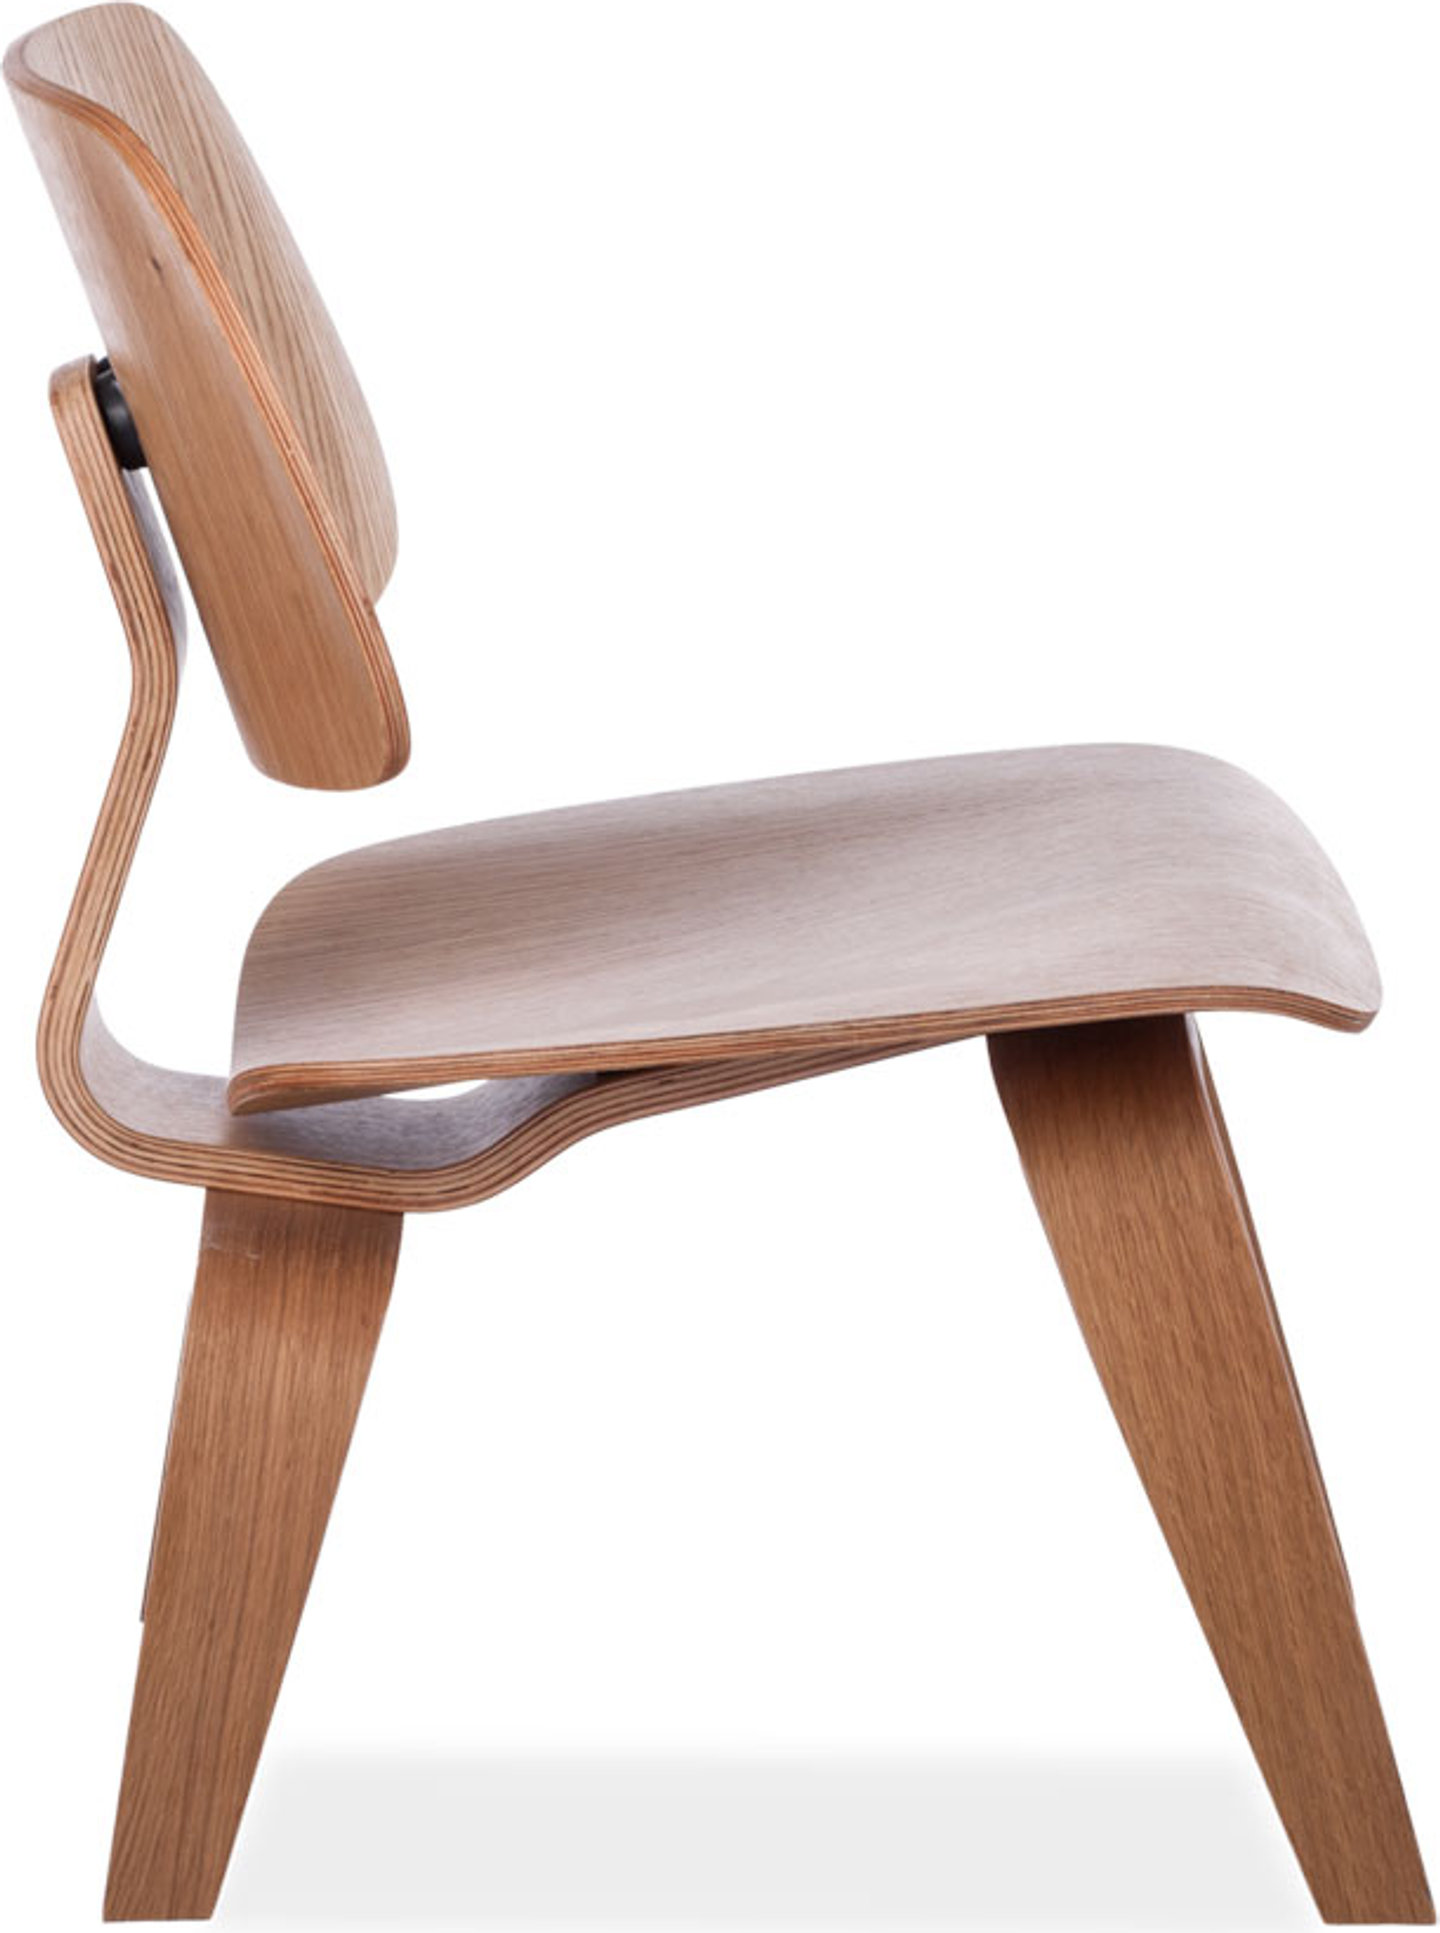 LCW-stol i Eames-stil Oak image.